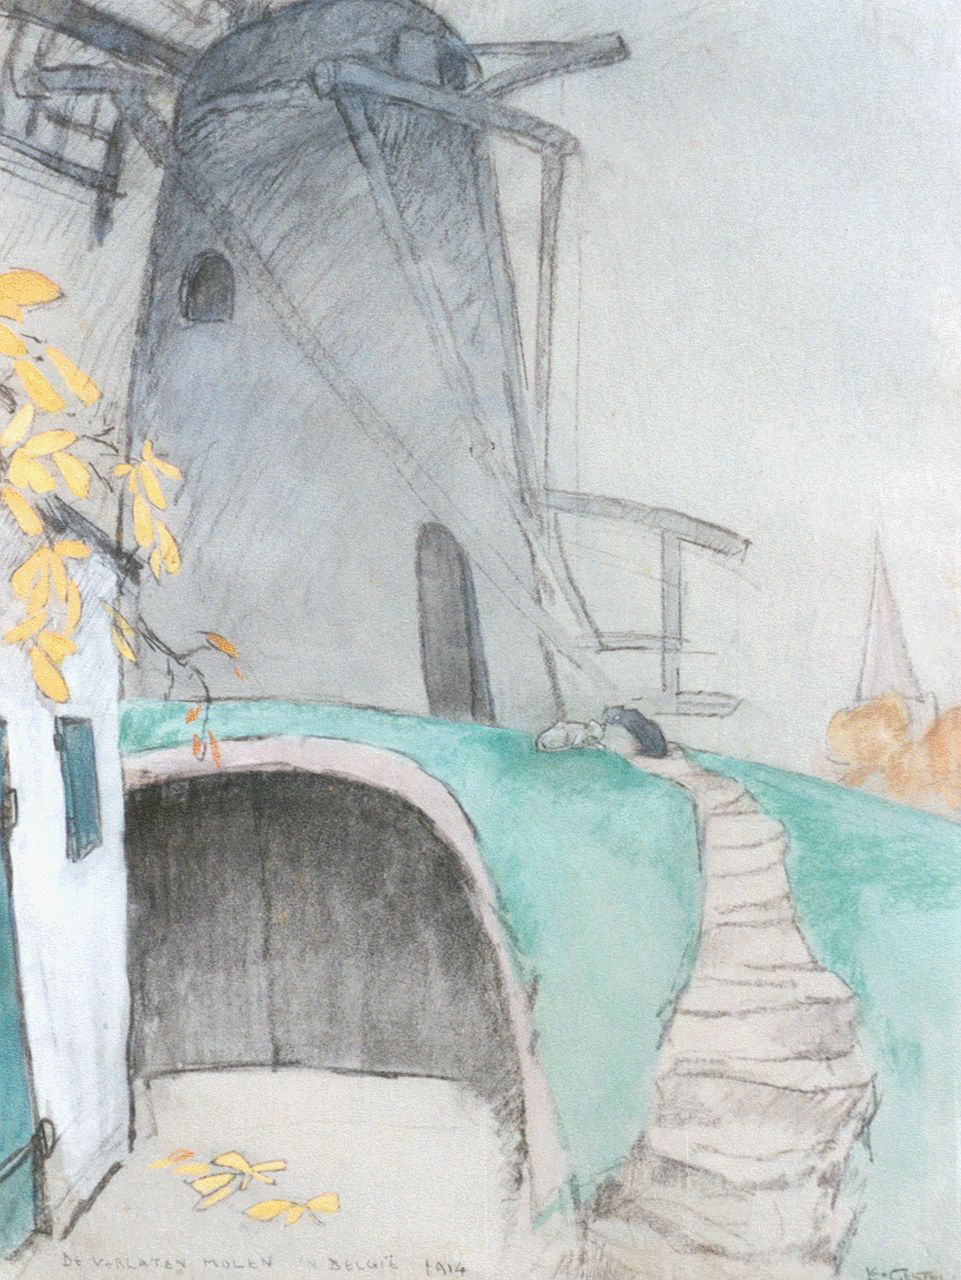 Gestel L.  | Leendert 'Leo' Gestel, De verlaten molen in België, zwart krijt, aquarel en pastel op papier 51,0 x 38,5 cm, gesigneerd rechtsonder en gedateerd 1914